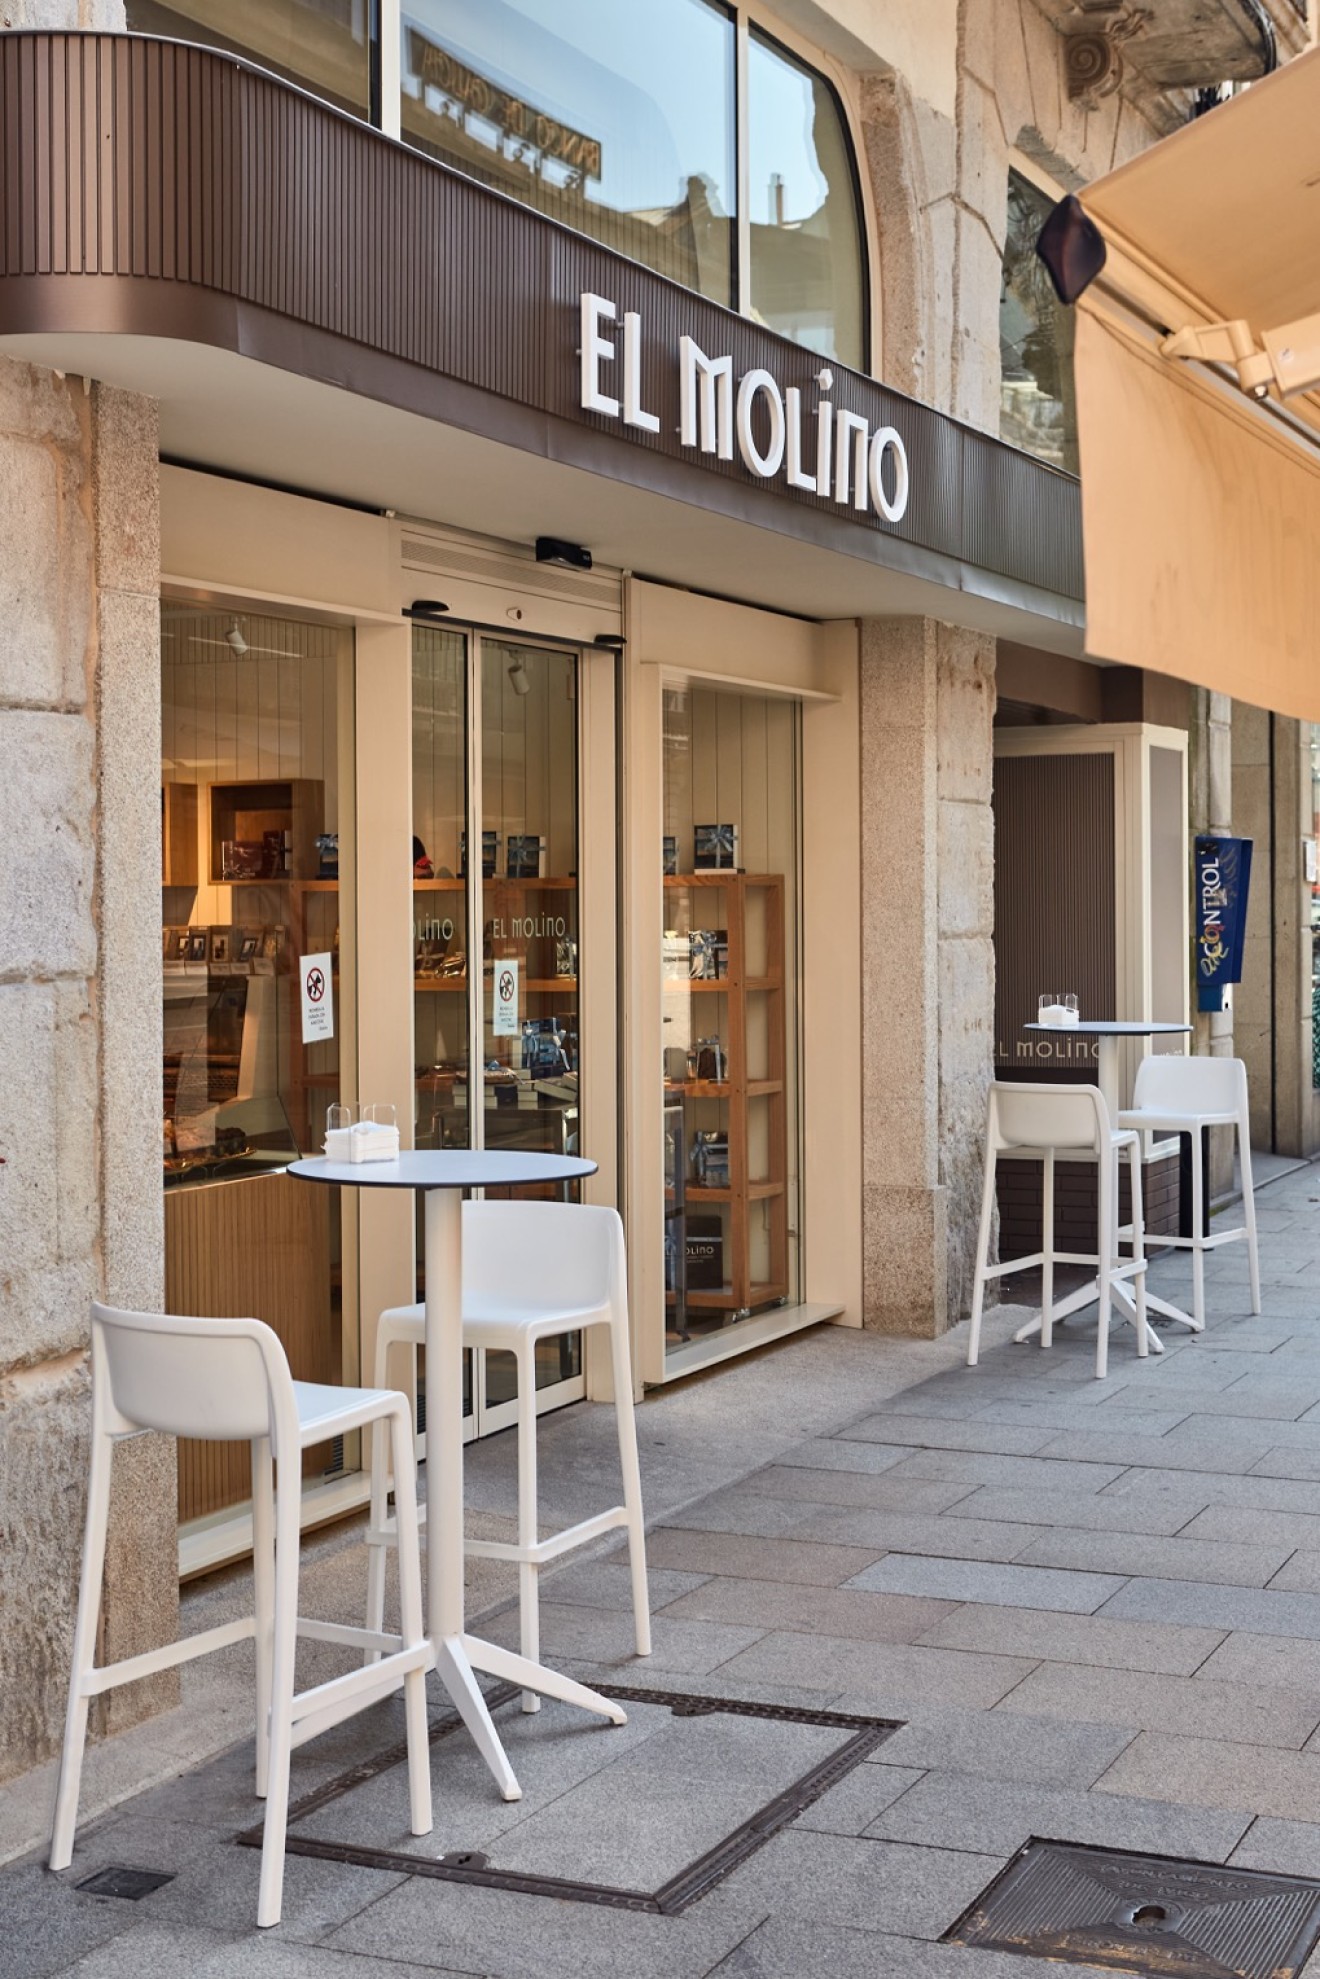 En uno de los extremos de esta calle se encuentra la pastelería El Molino, el lugar perfecto para disfrutar de unos de los mejores dulces de la ciudad olívica.